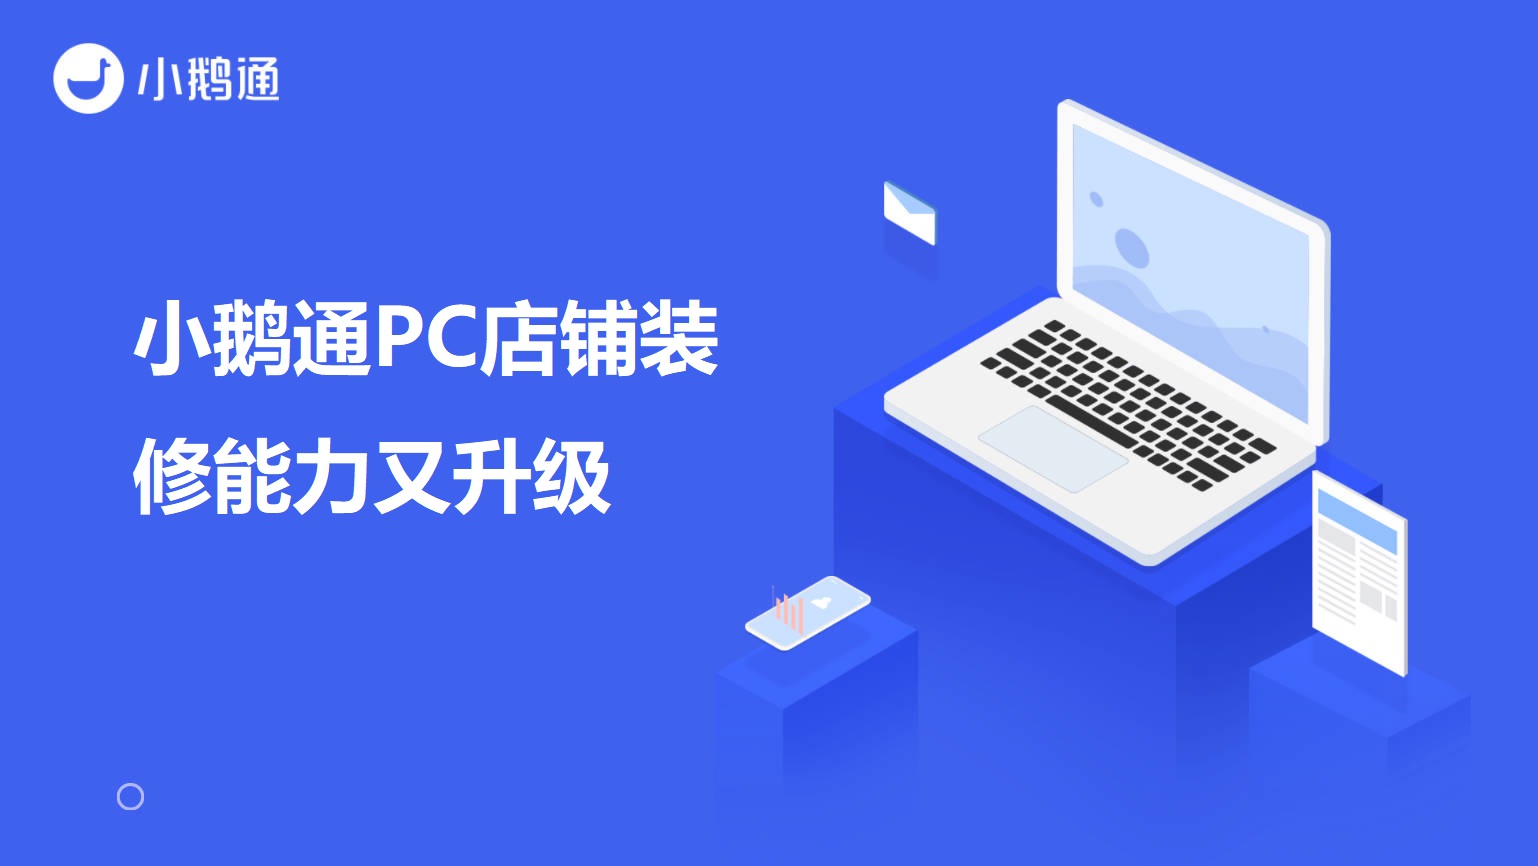 潞城小鹅通PC店铺装修能力又升级啦！自定义背景色、课程分类、直播等组件优化！